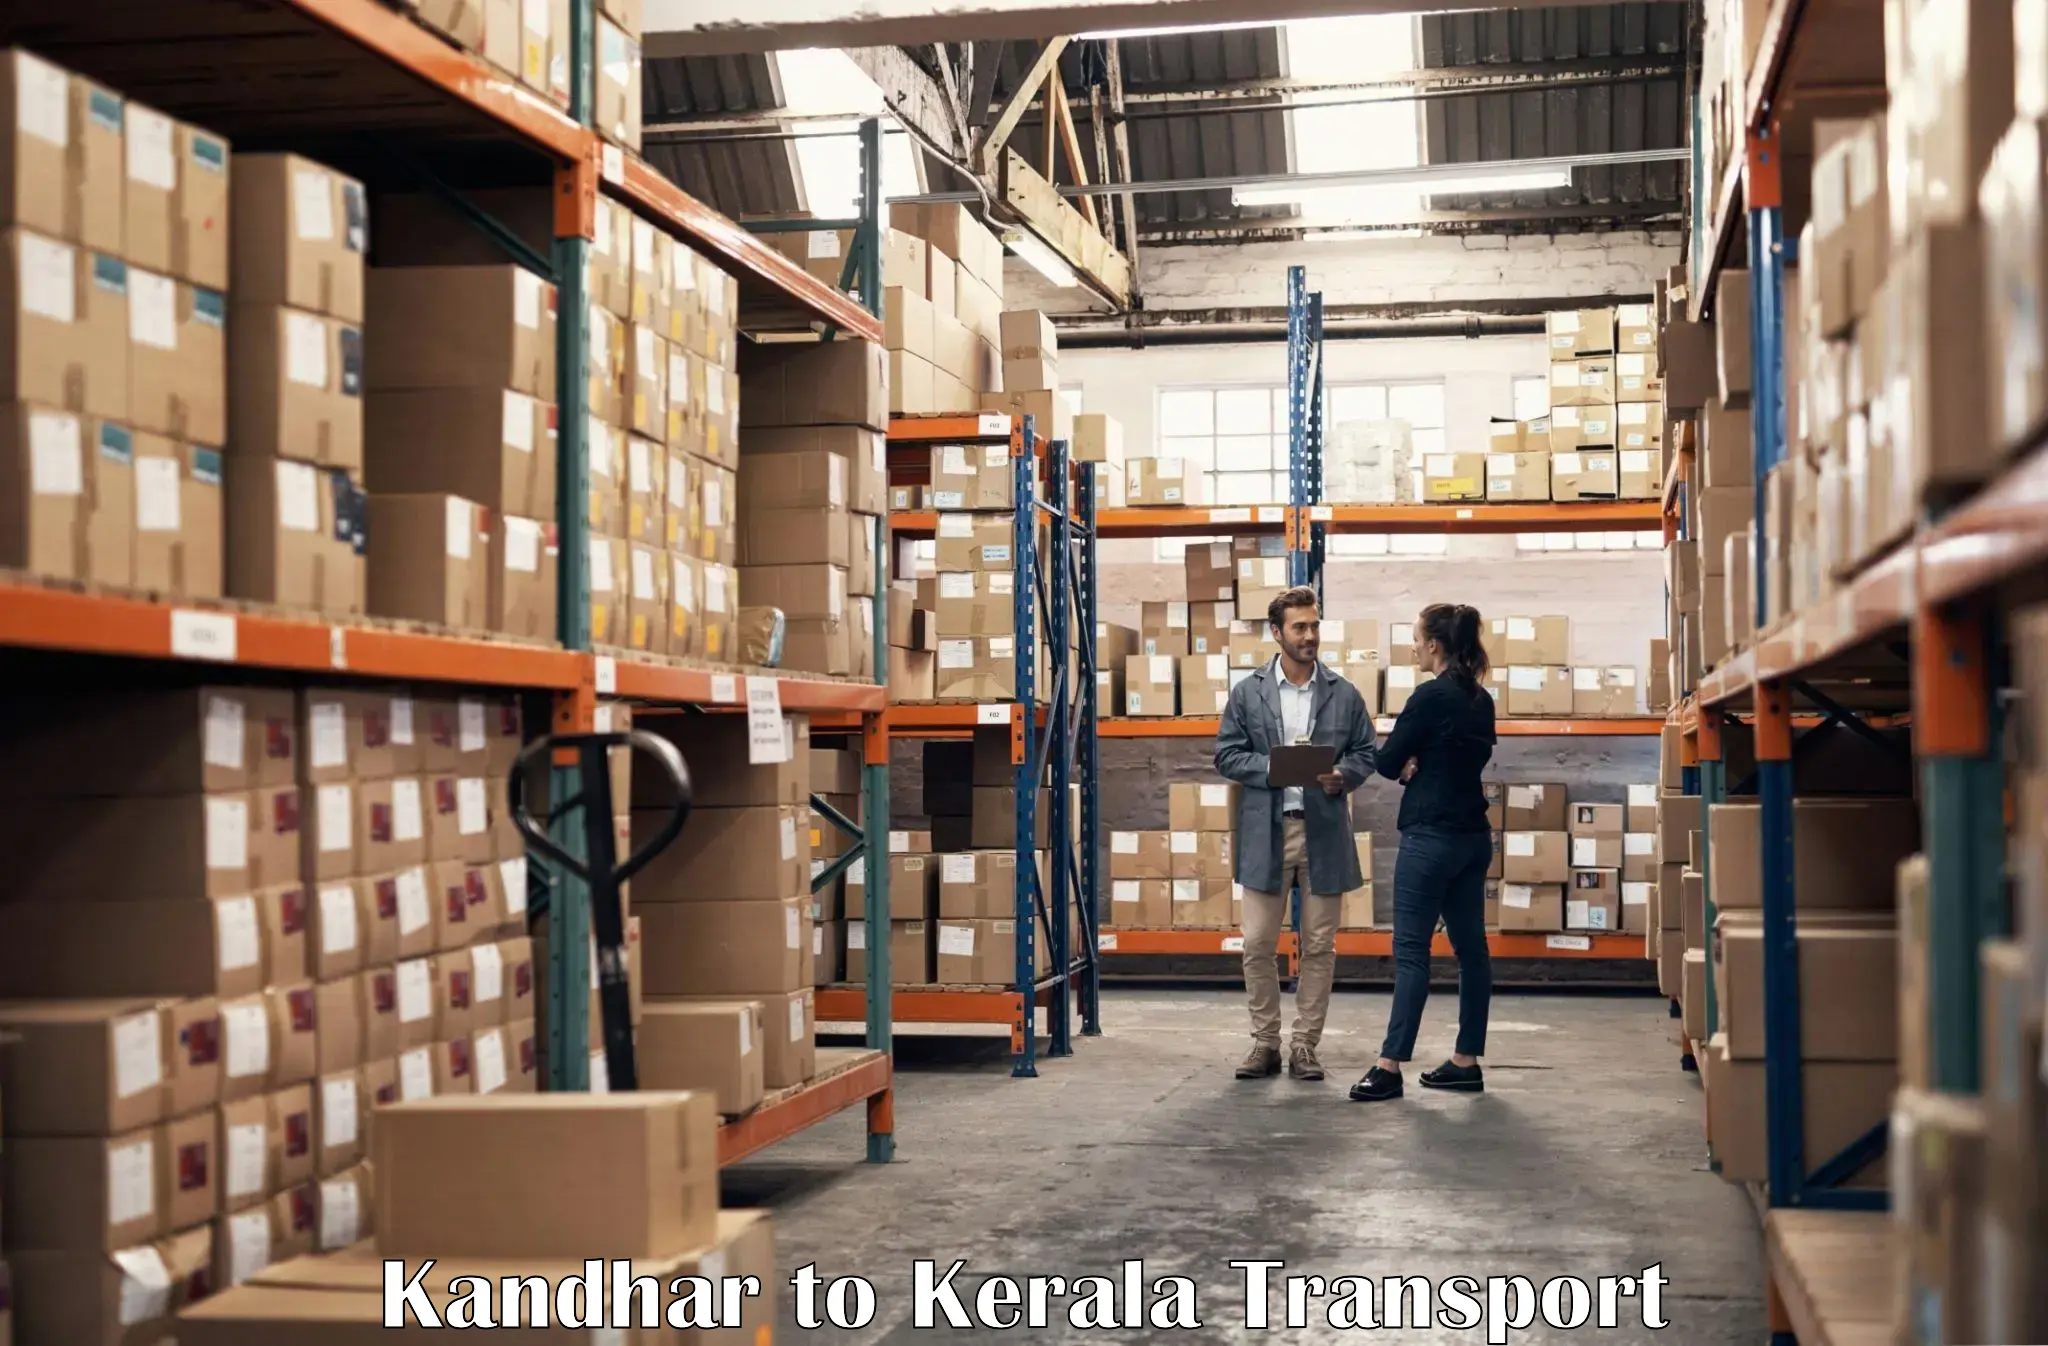 Shipping partner Kandhar to Ayoor